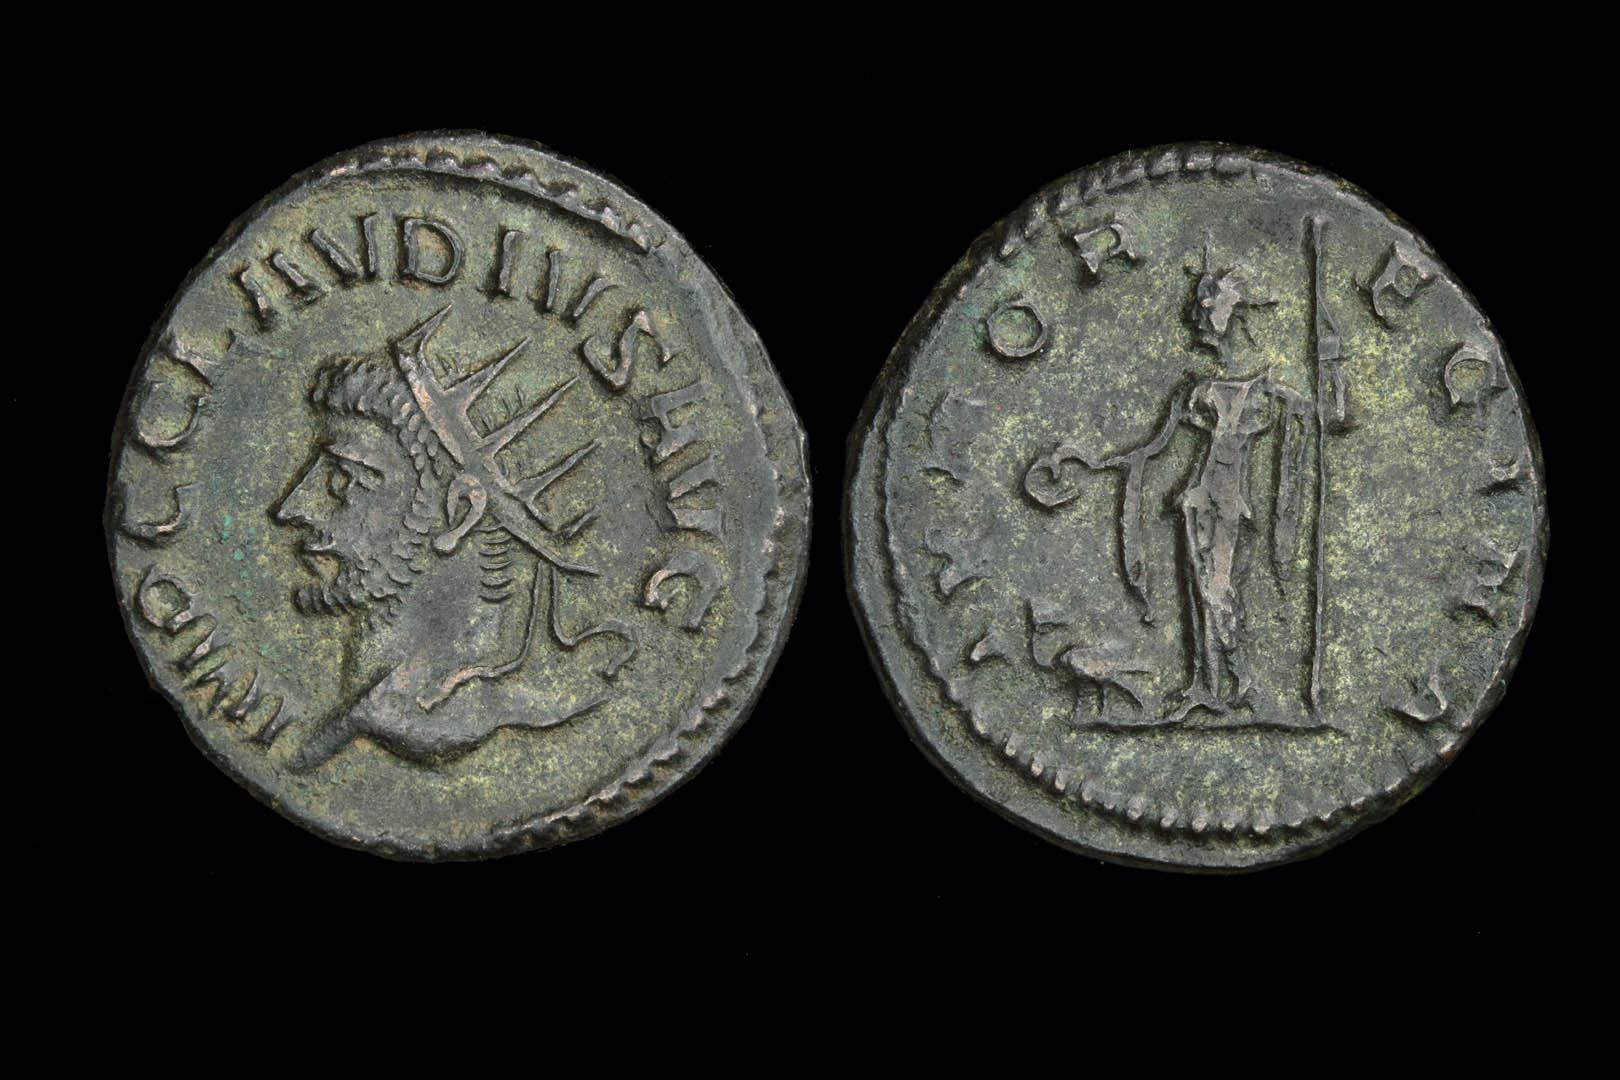 Index - Doug's Claudius II Juno Regina rq2159fd3379.jpg